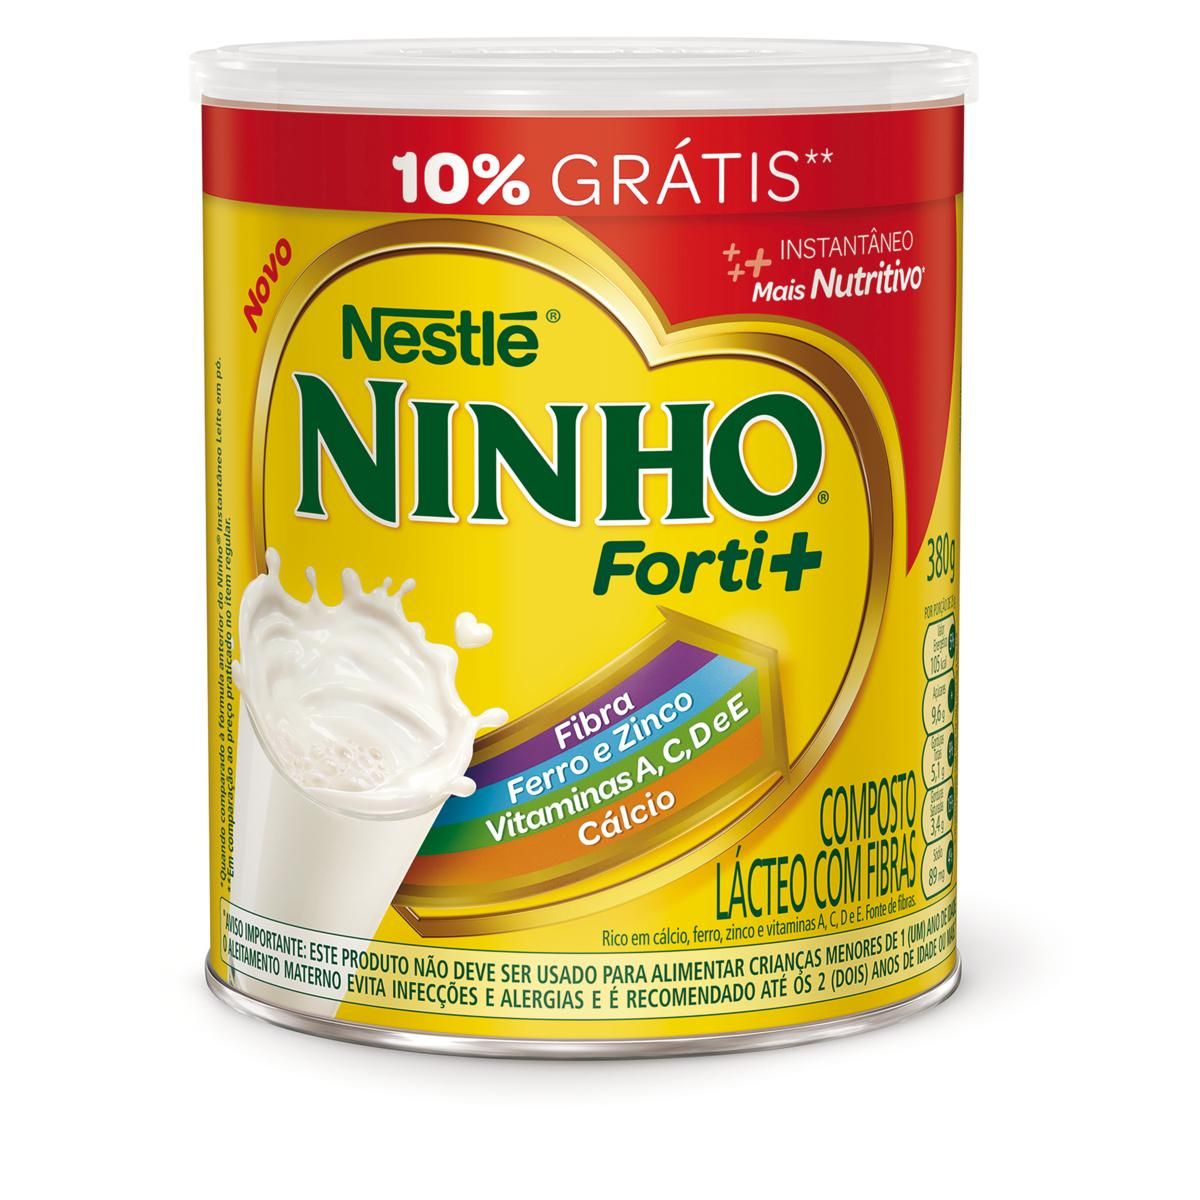 Composto Lácteo Ninho Forti+ 10% Grátis 380g